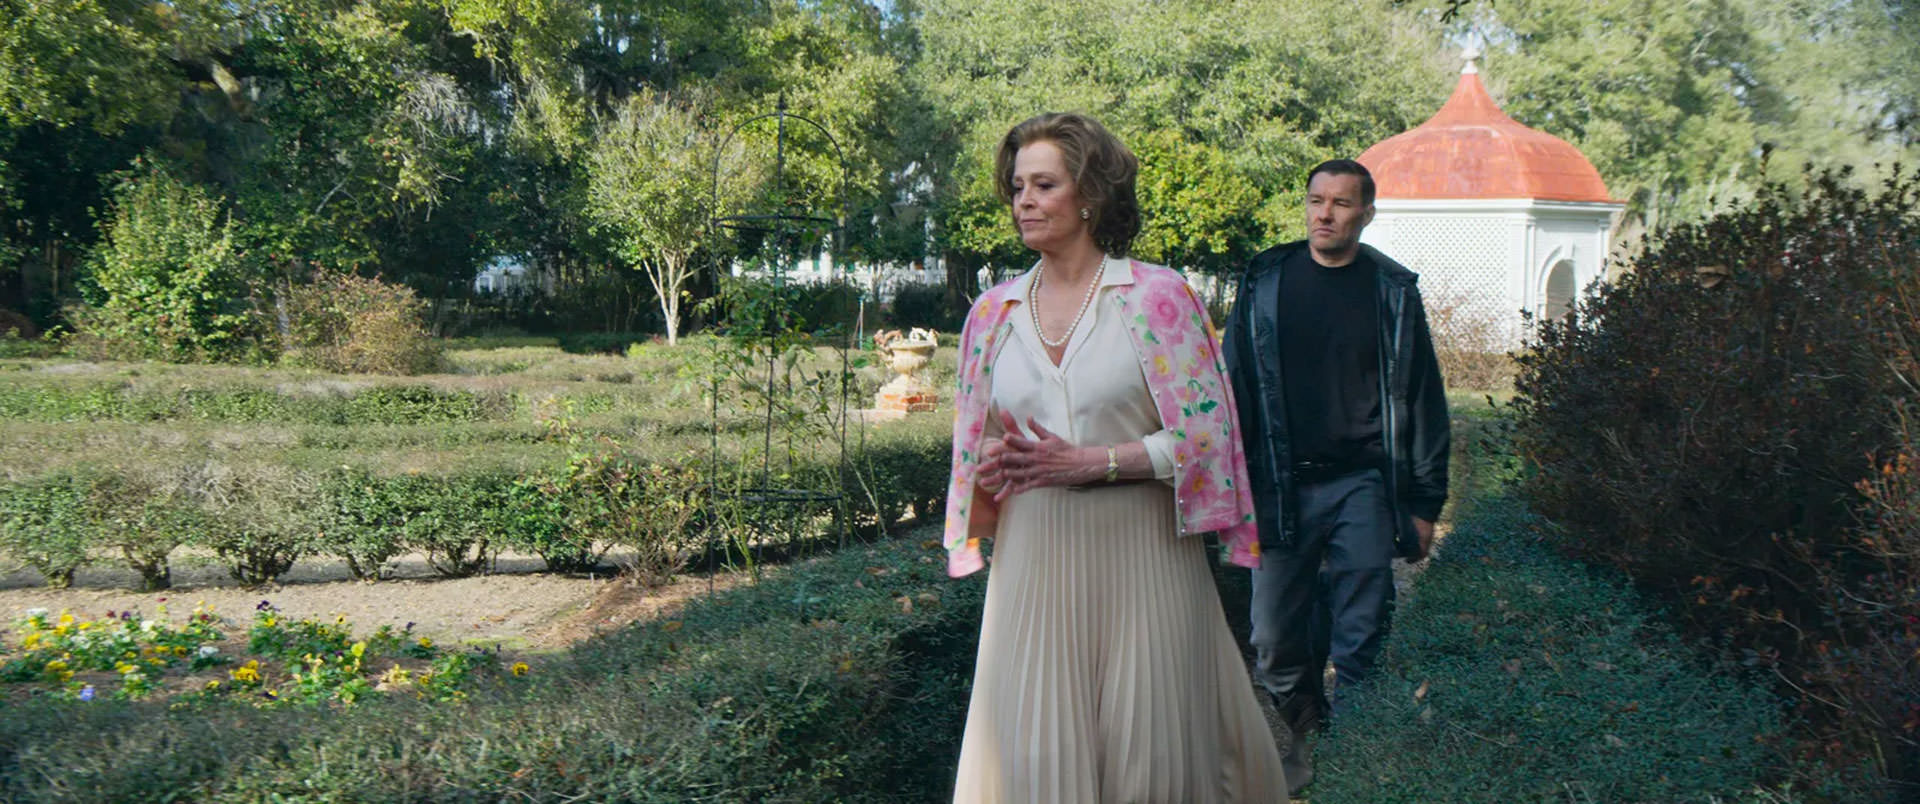 سیگورنی ویور در حال راه رفتن جلوتر در جول اجرتون در یک باغ بازرگ در نمایی از فیلم استاد باغبان به کارگردانی پل شریدر